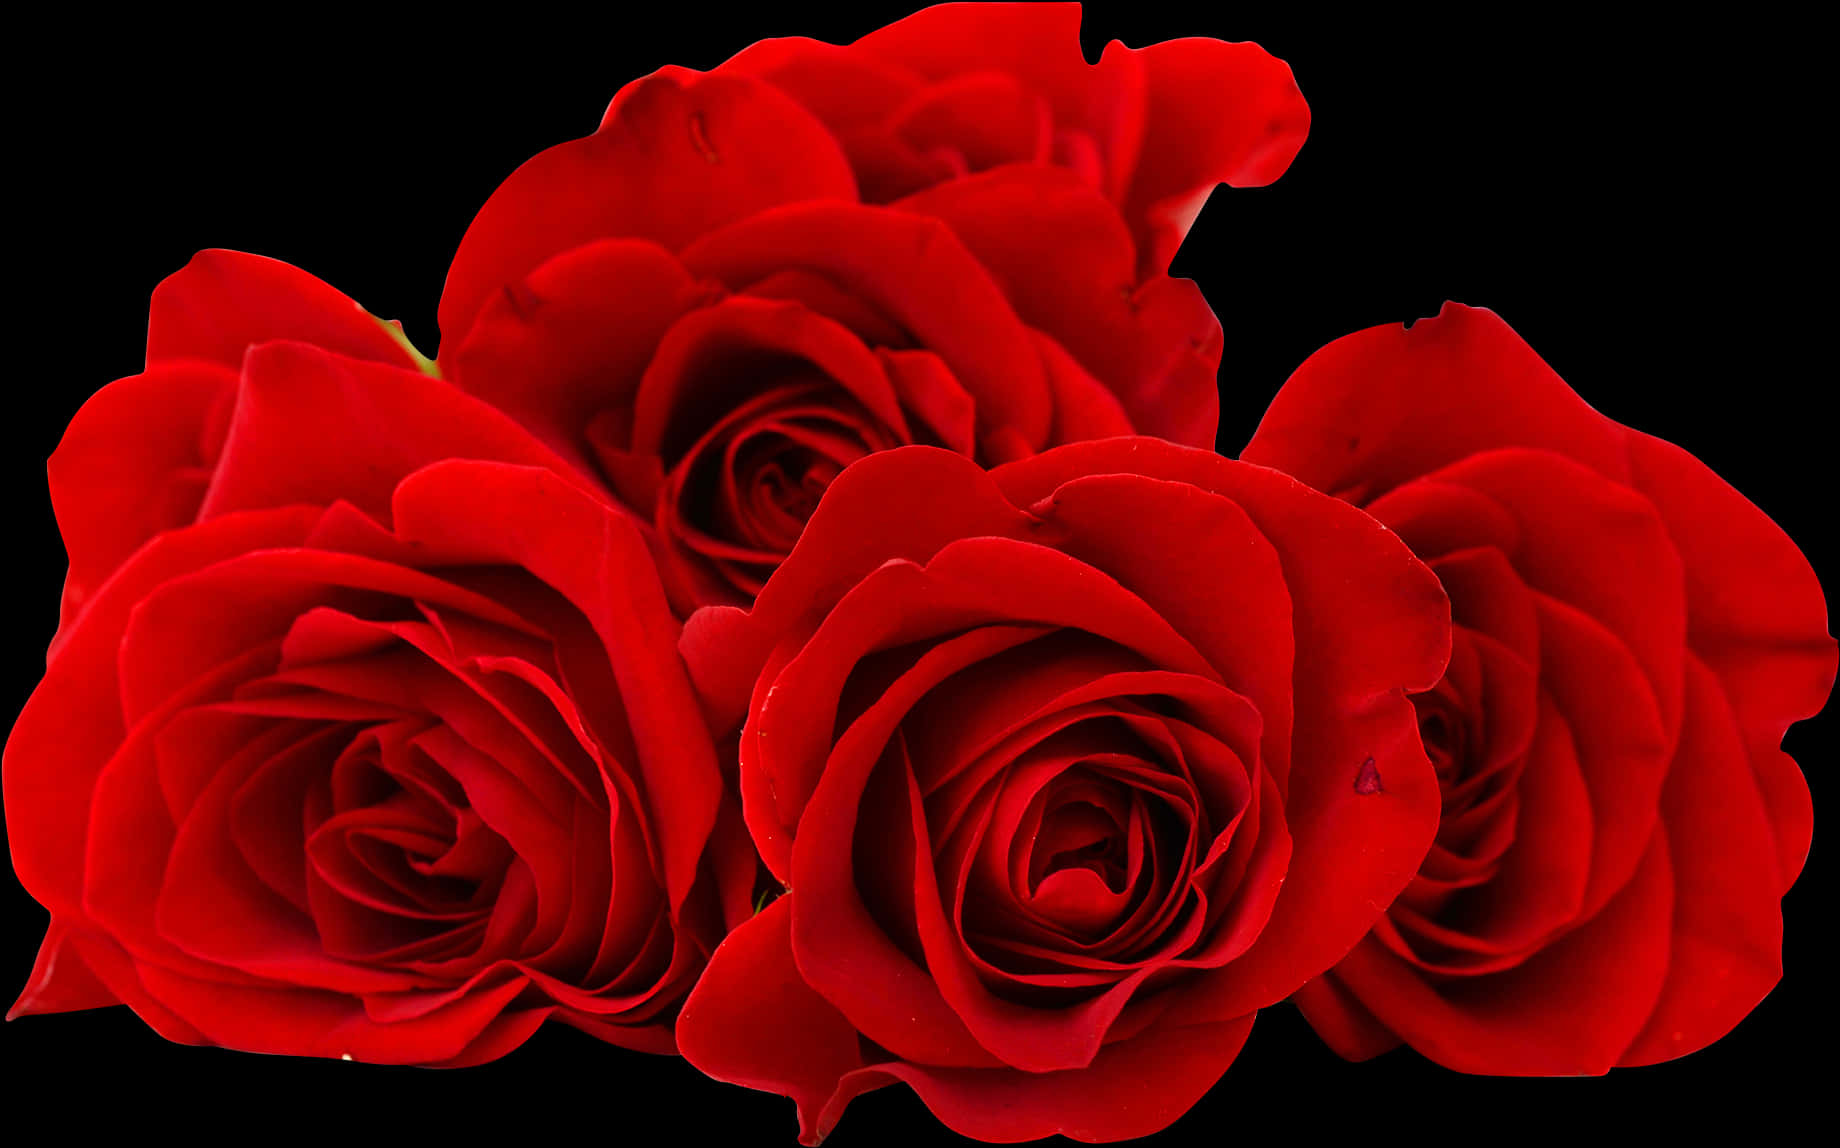 Vibrant_ Red_ Roses_ Black_ Background.jpg